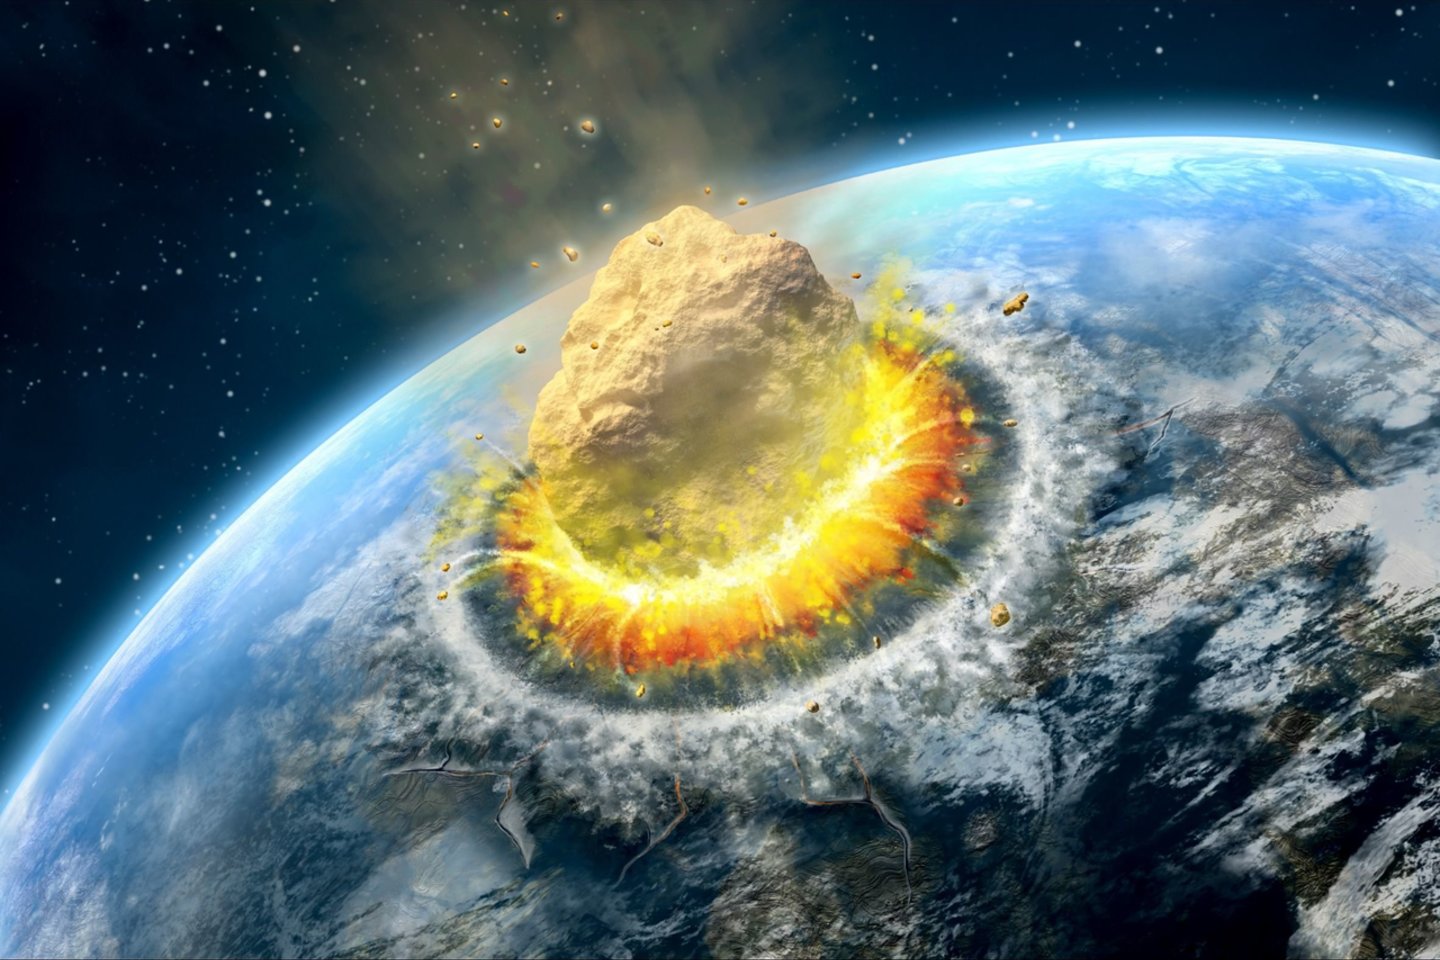  Asteroido smūgis į Žemę, jei asteroidas bent kelių šimtų metrų skersmens, būtų katastrofa visai žmonijai.<br>123rf iliustr.